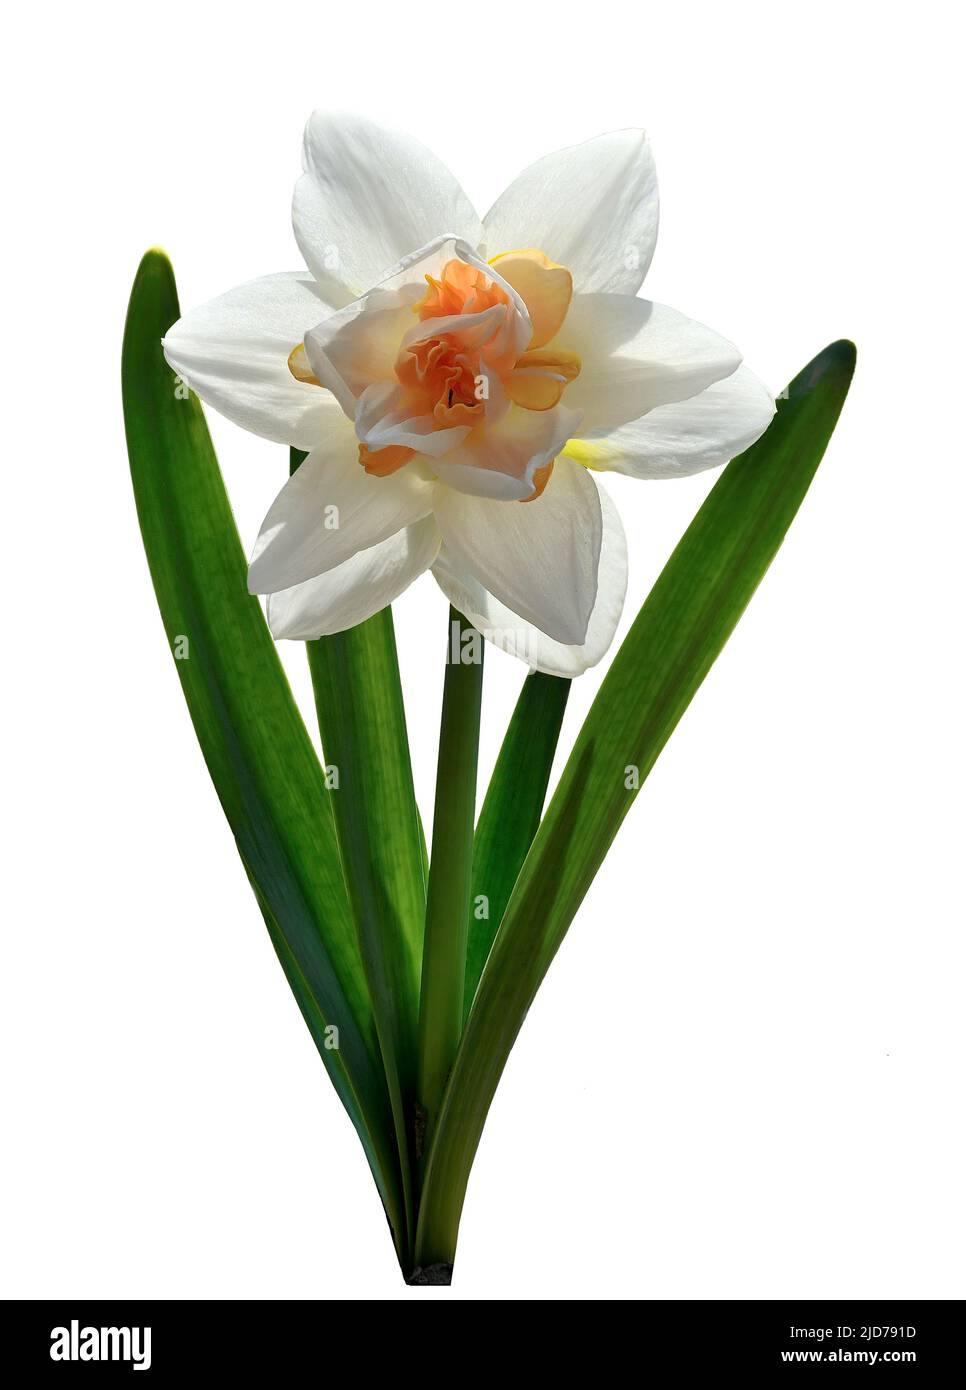 Sencillo Elegante blanco con narciso naranja flor primer plano aislado sobre blanco. Hermosa flor de primavera narciso con hojas verdes. Híbrido de jon Foto de stock